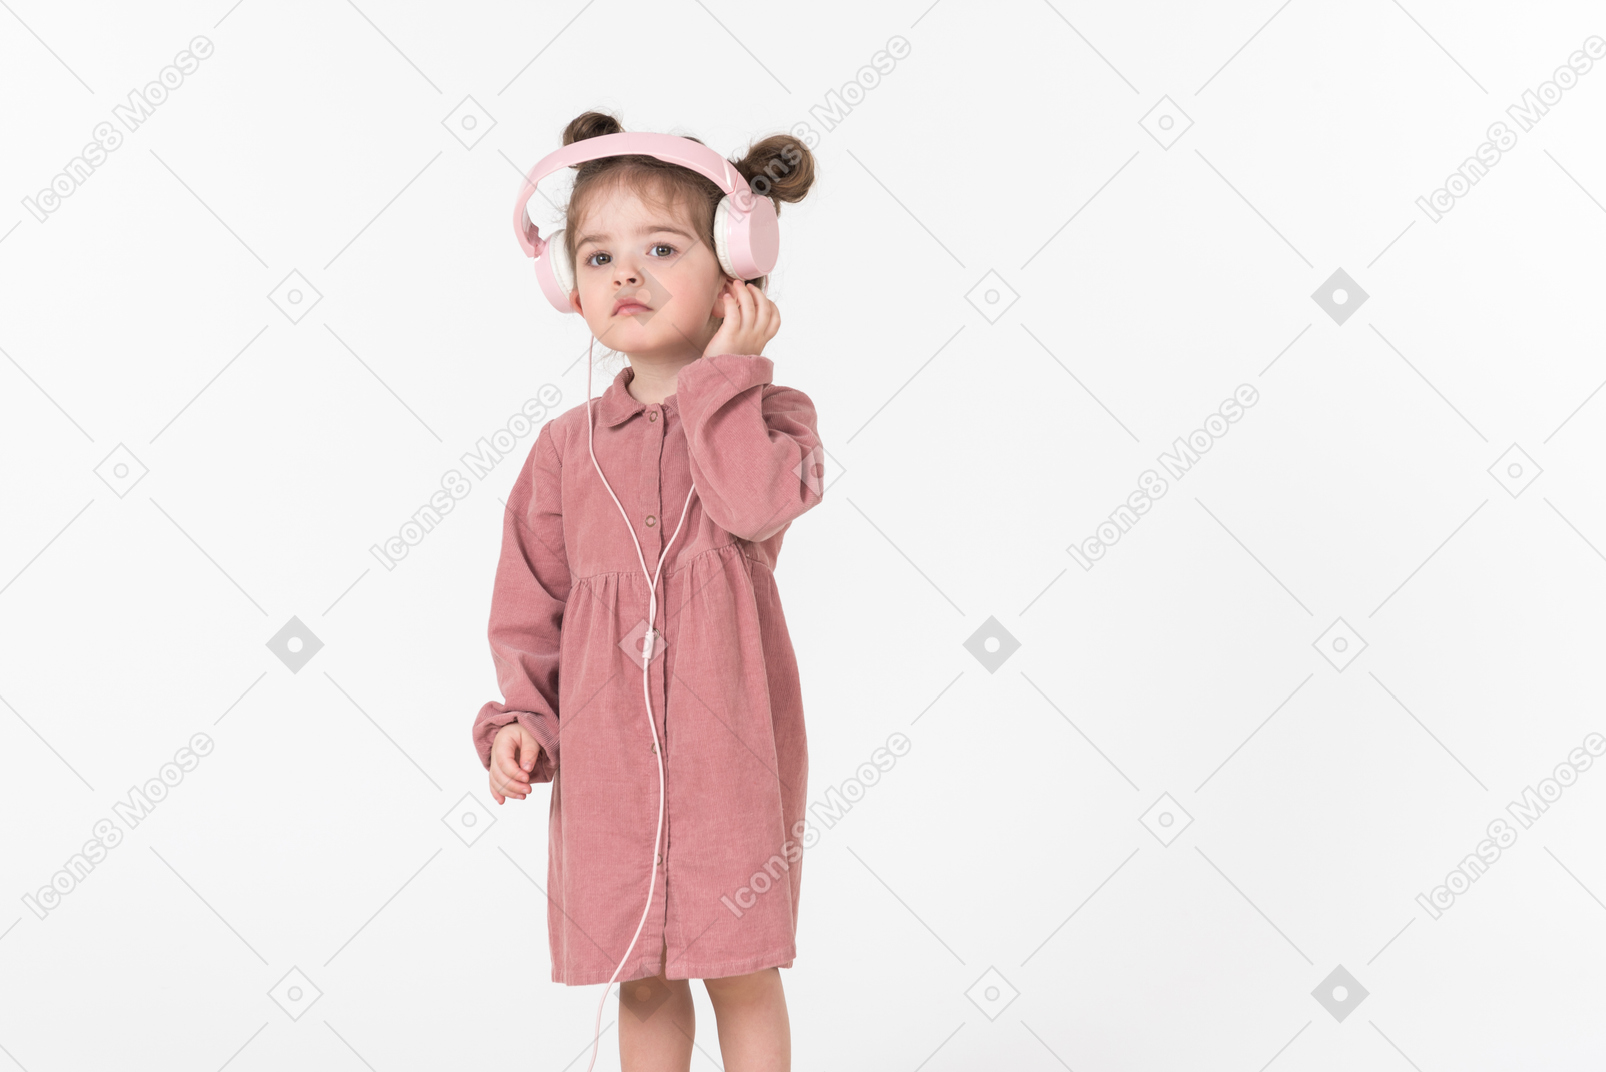 Funny looking kid girl wearing pink headphones